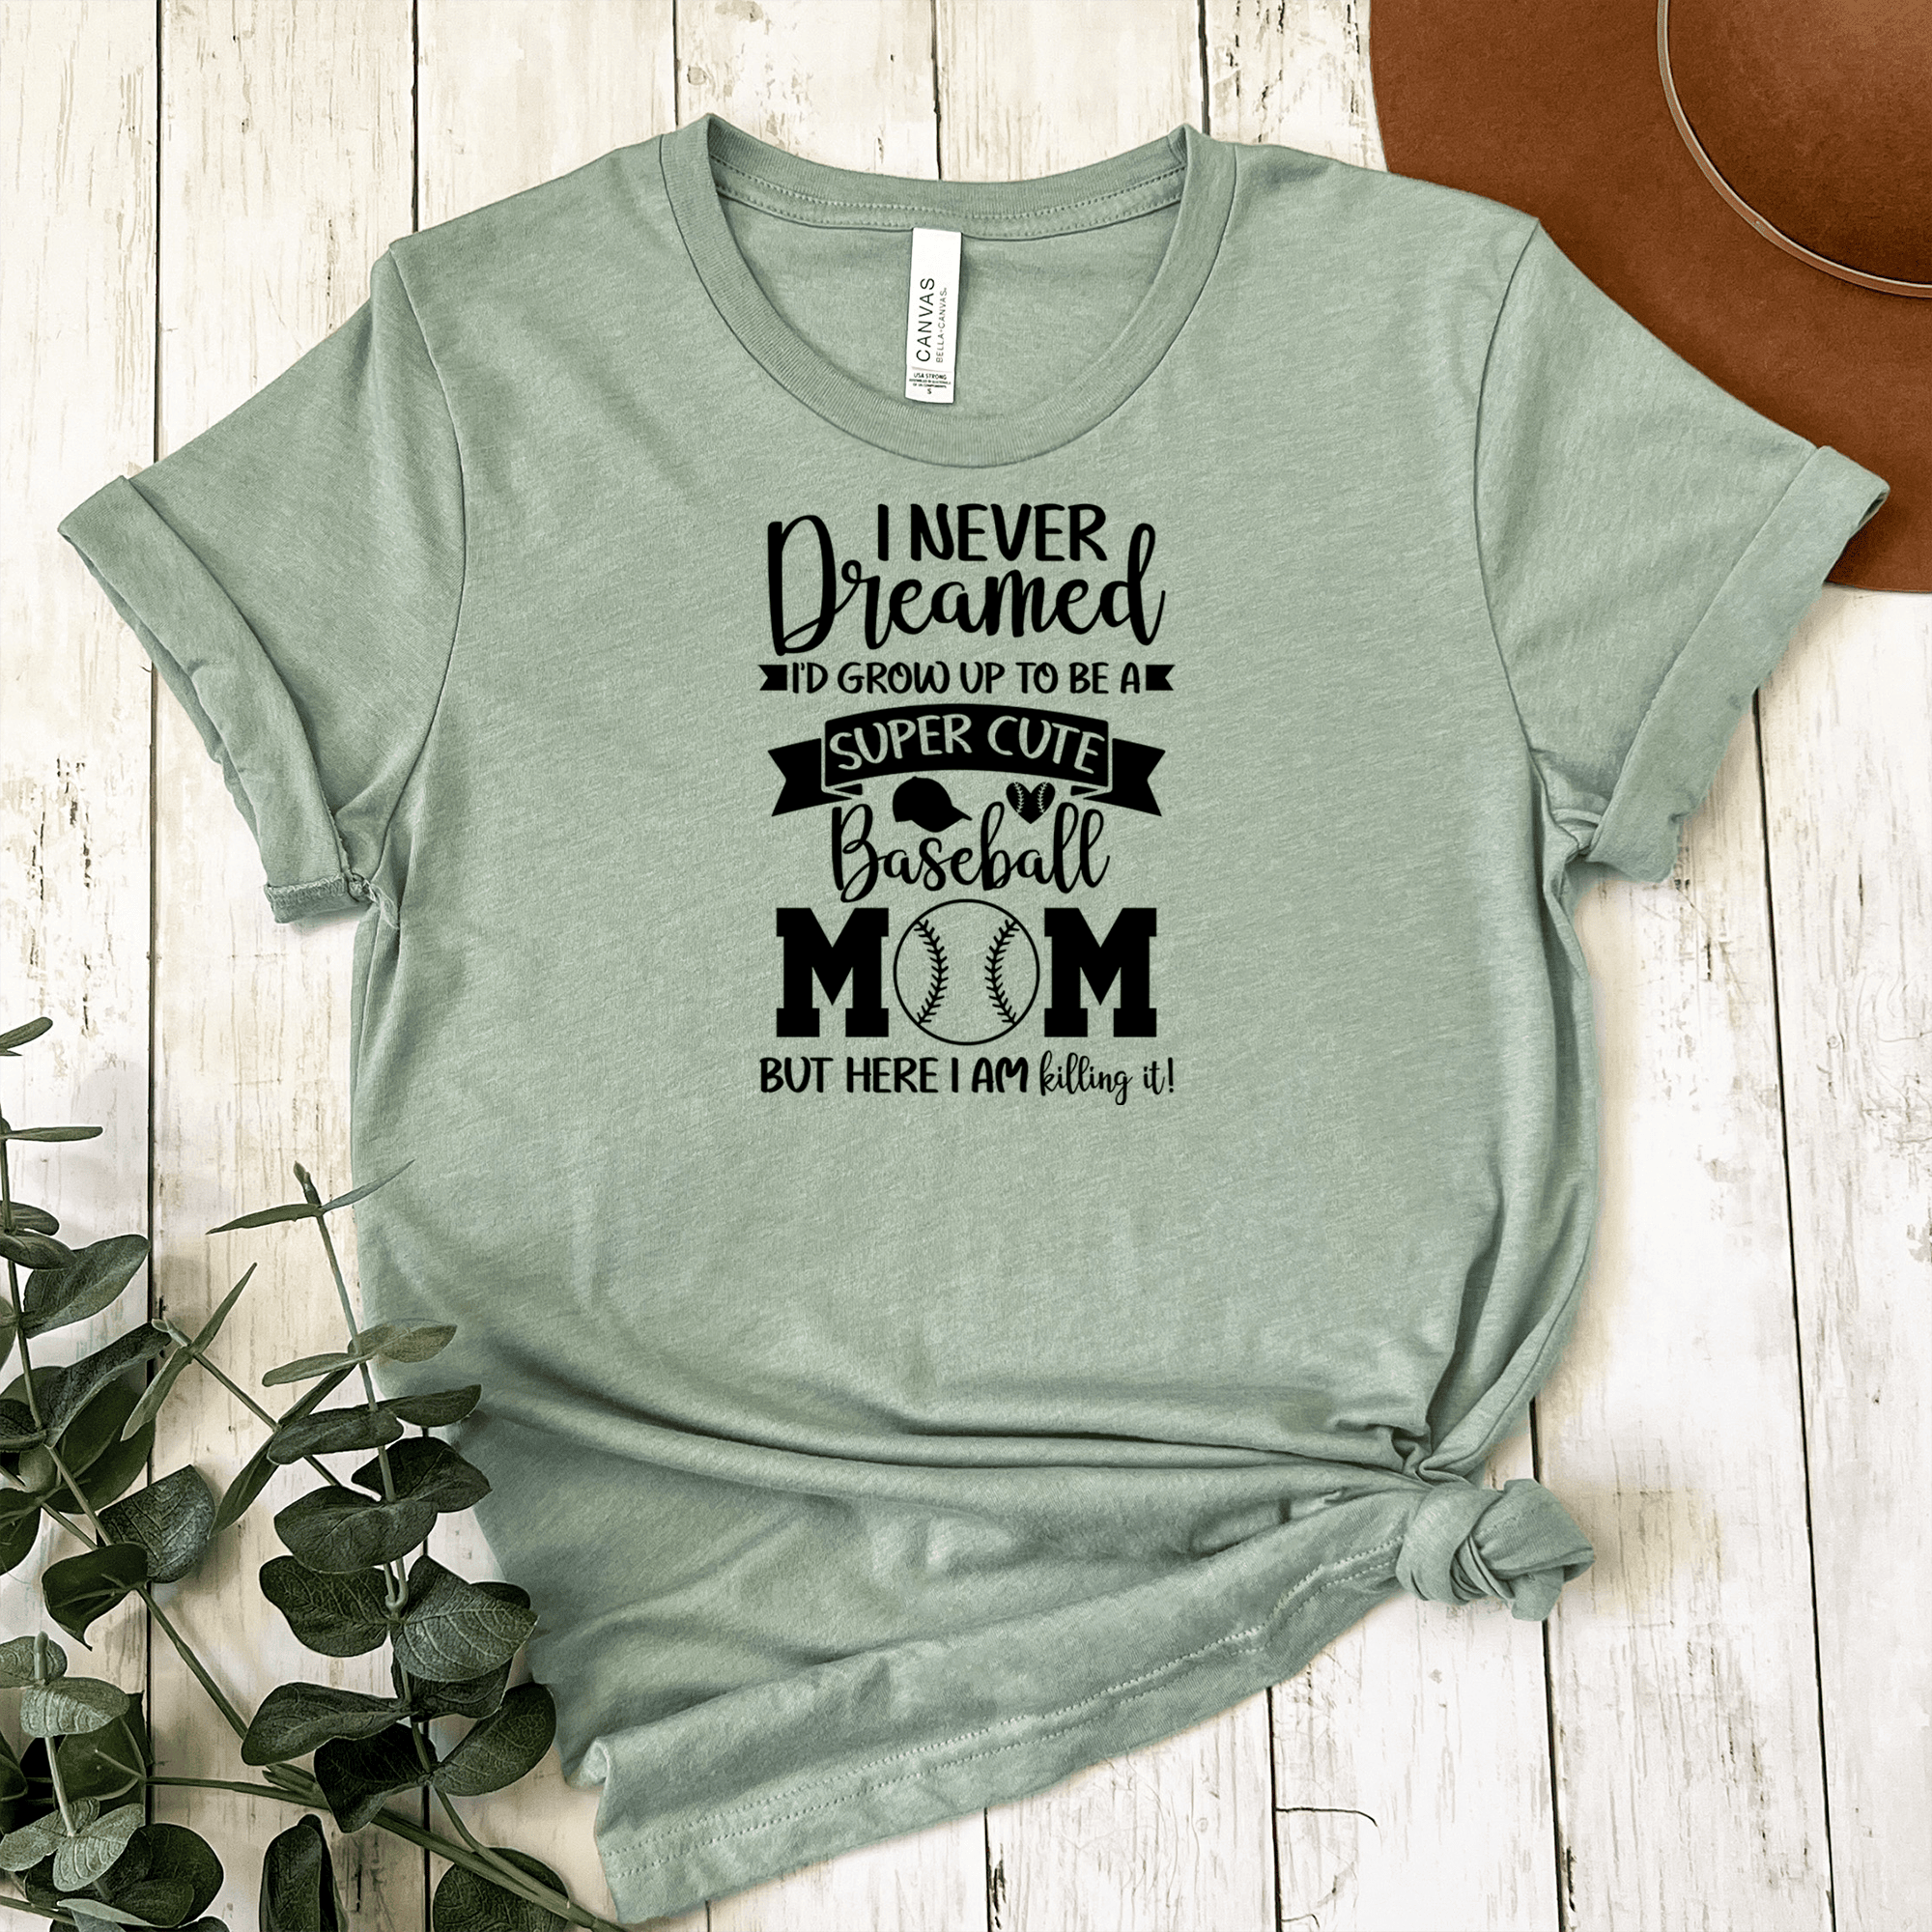 Womens Light Green T Shirt with Super-Cute-Baseball-Mom design